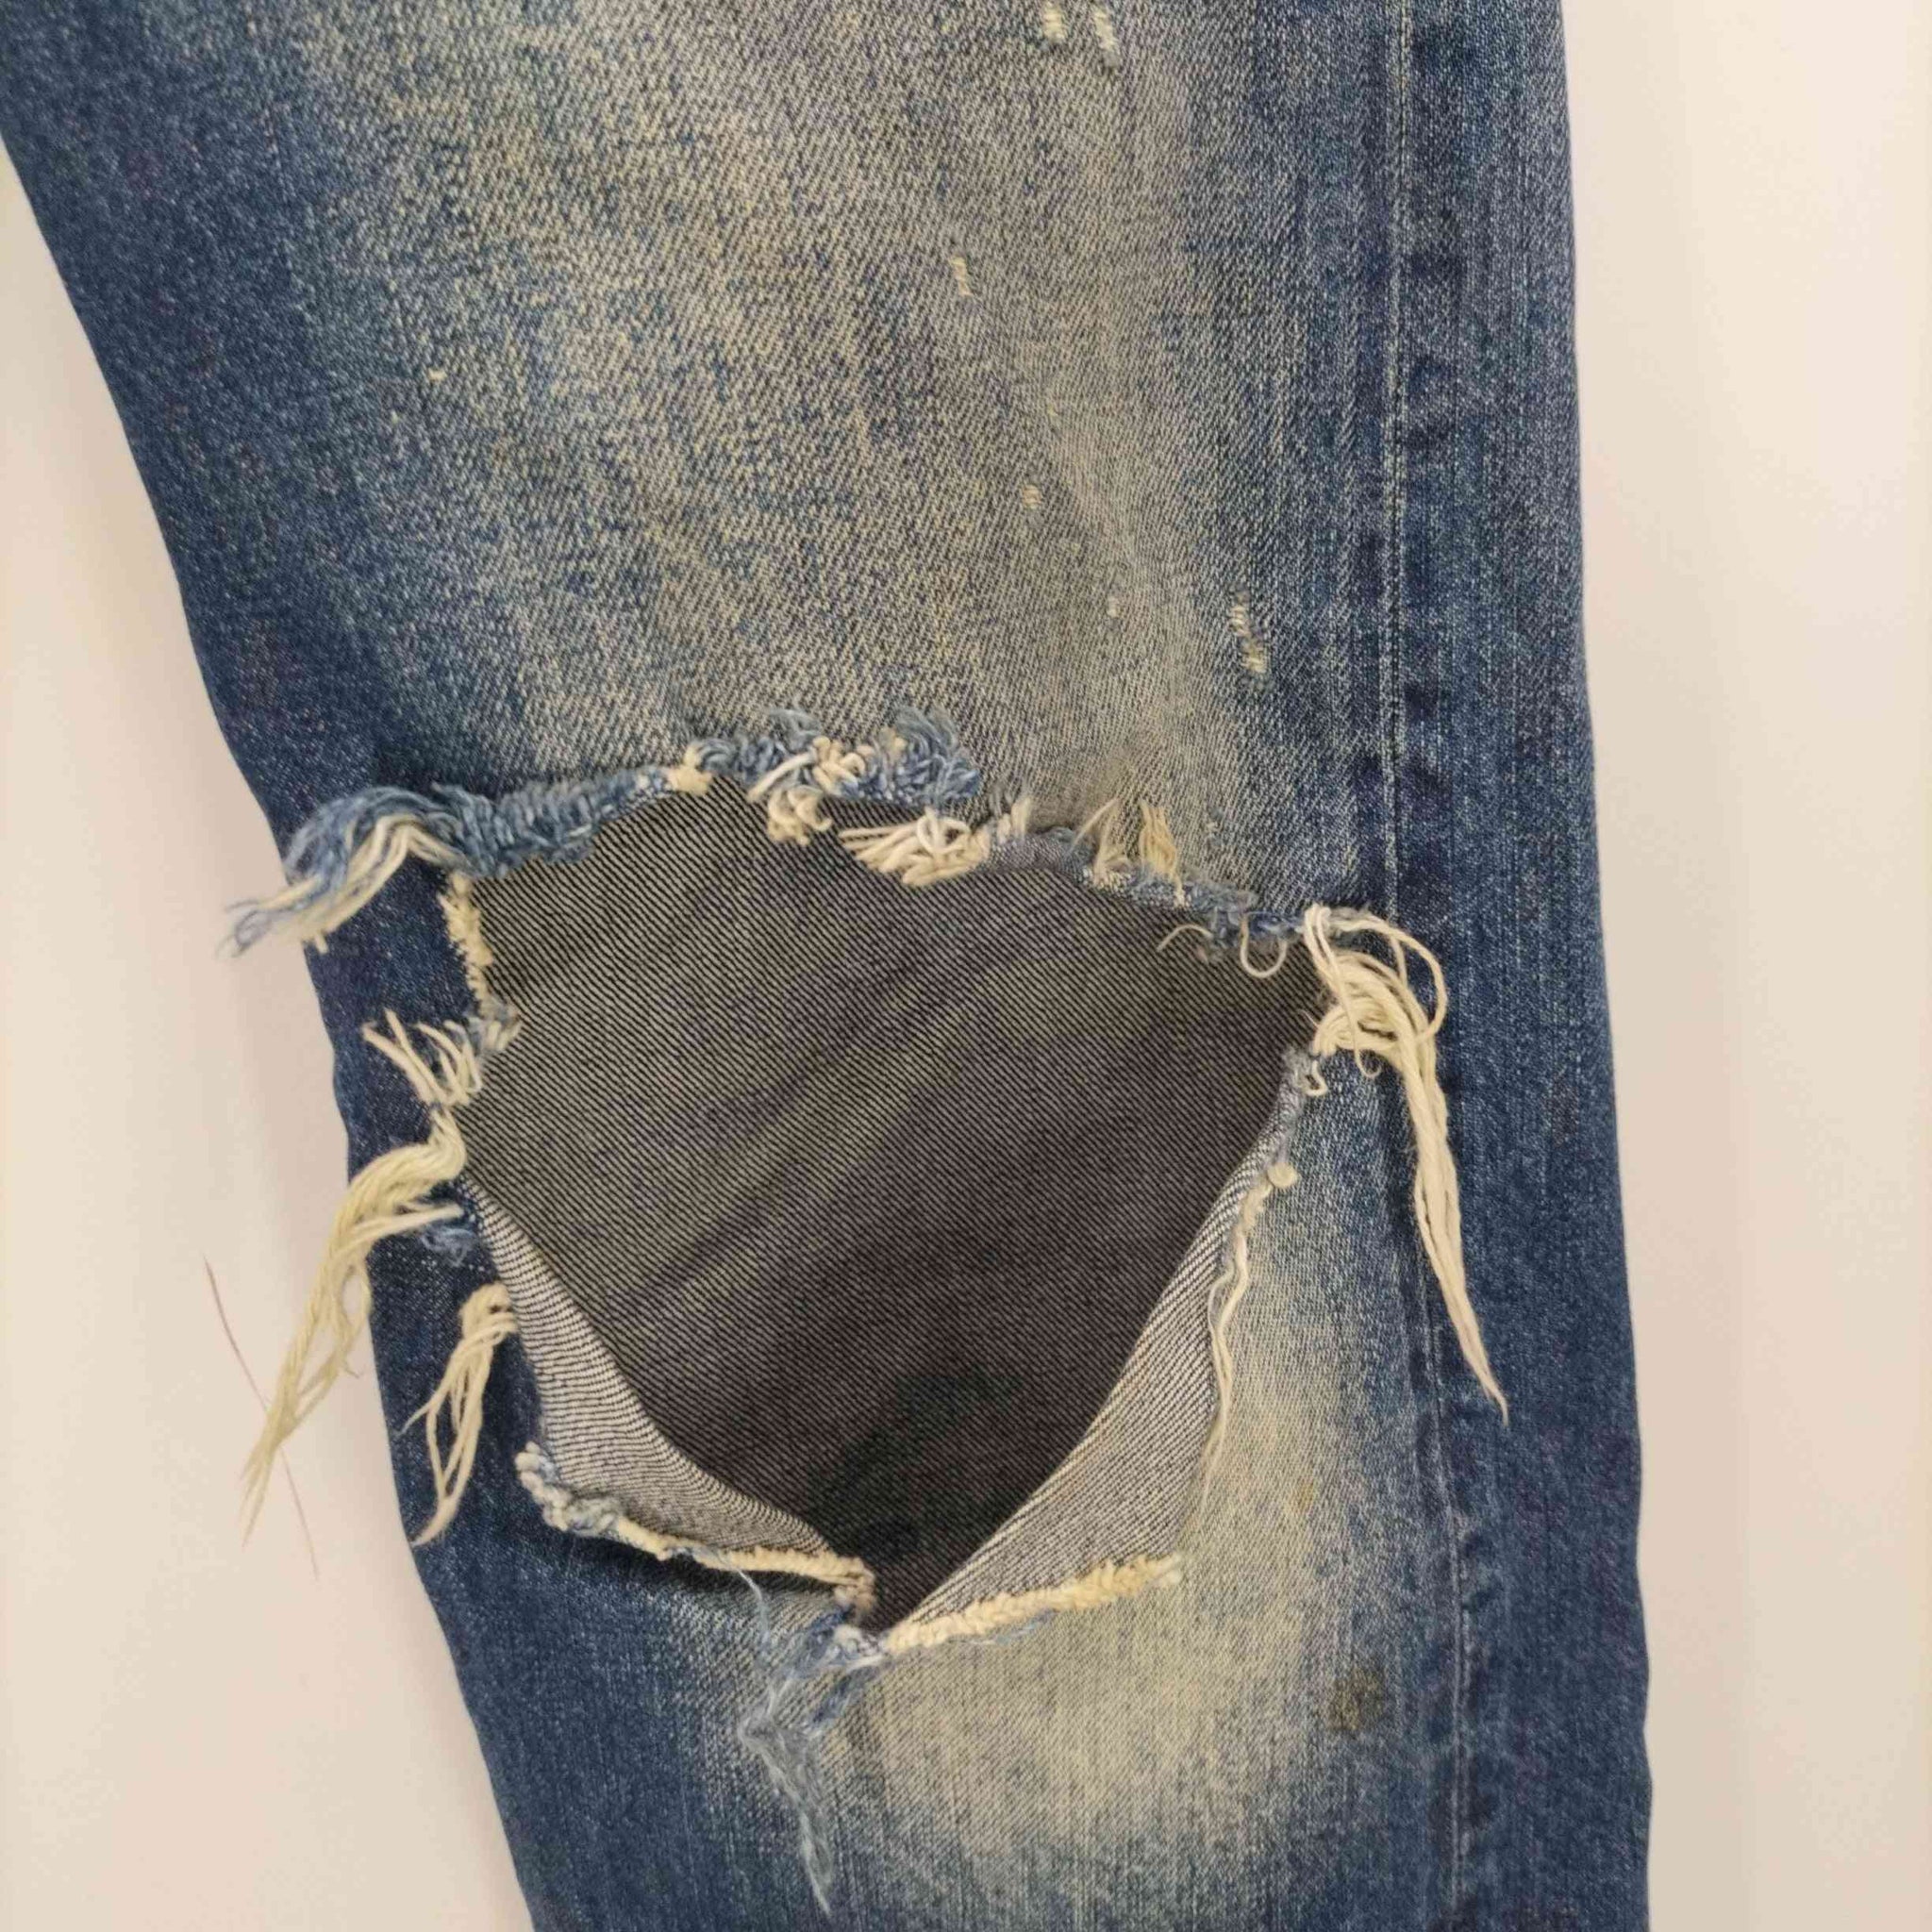 Levis(リーバイス)501XX Vintage Clothing Jeans 1966モデル セルビッジ コーン ダメージ デニム パンツ